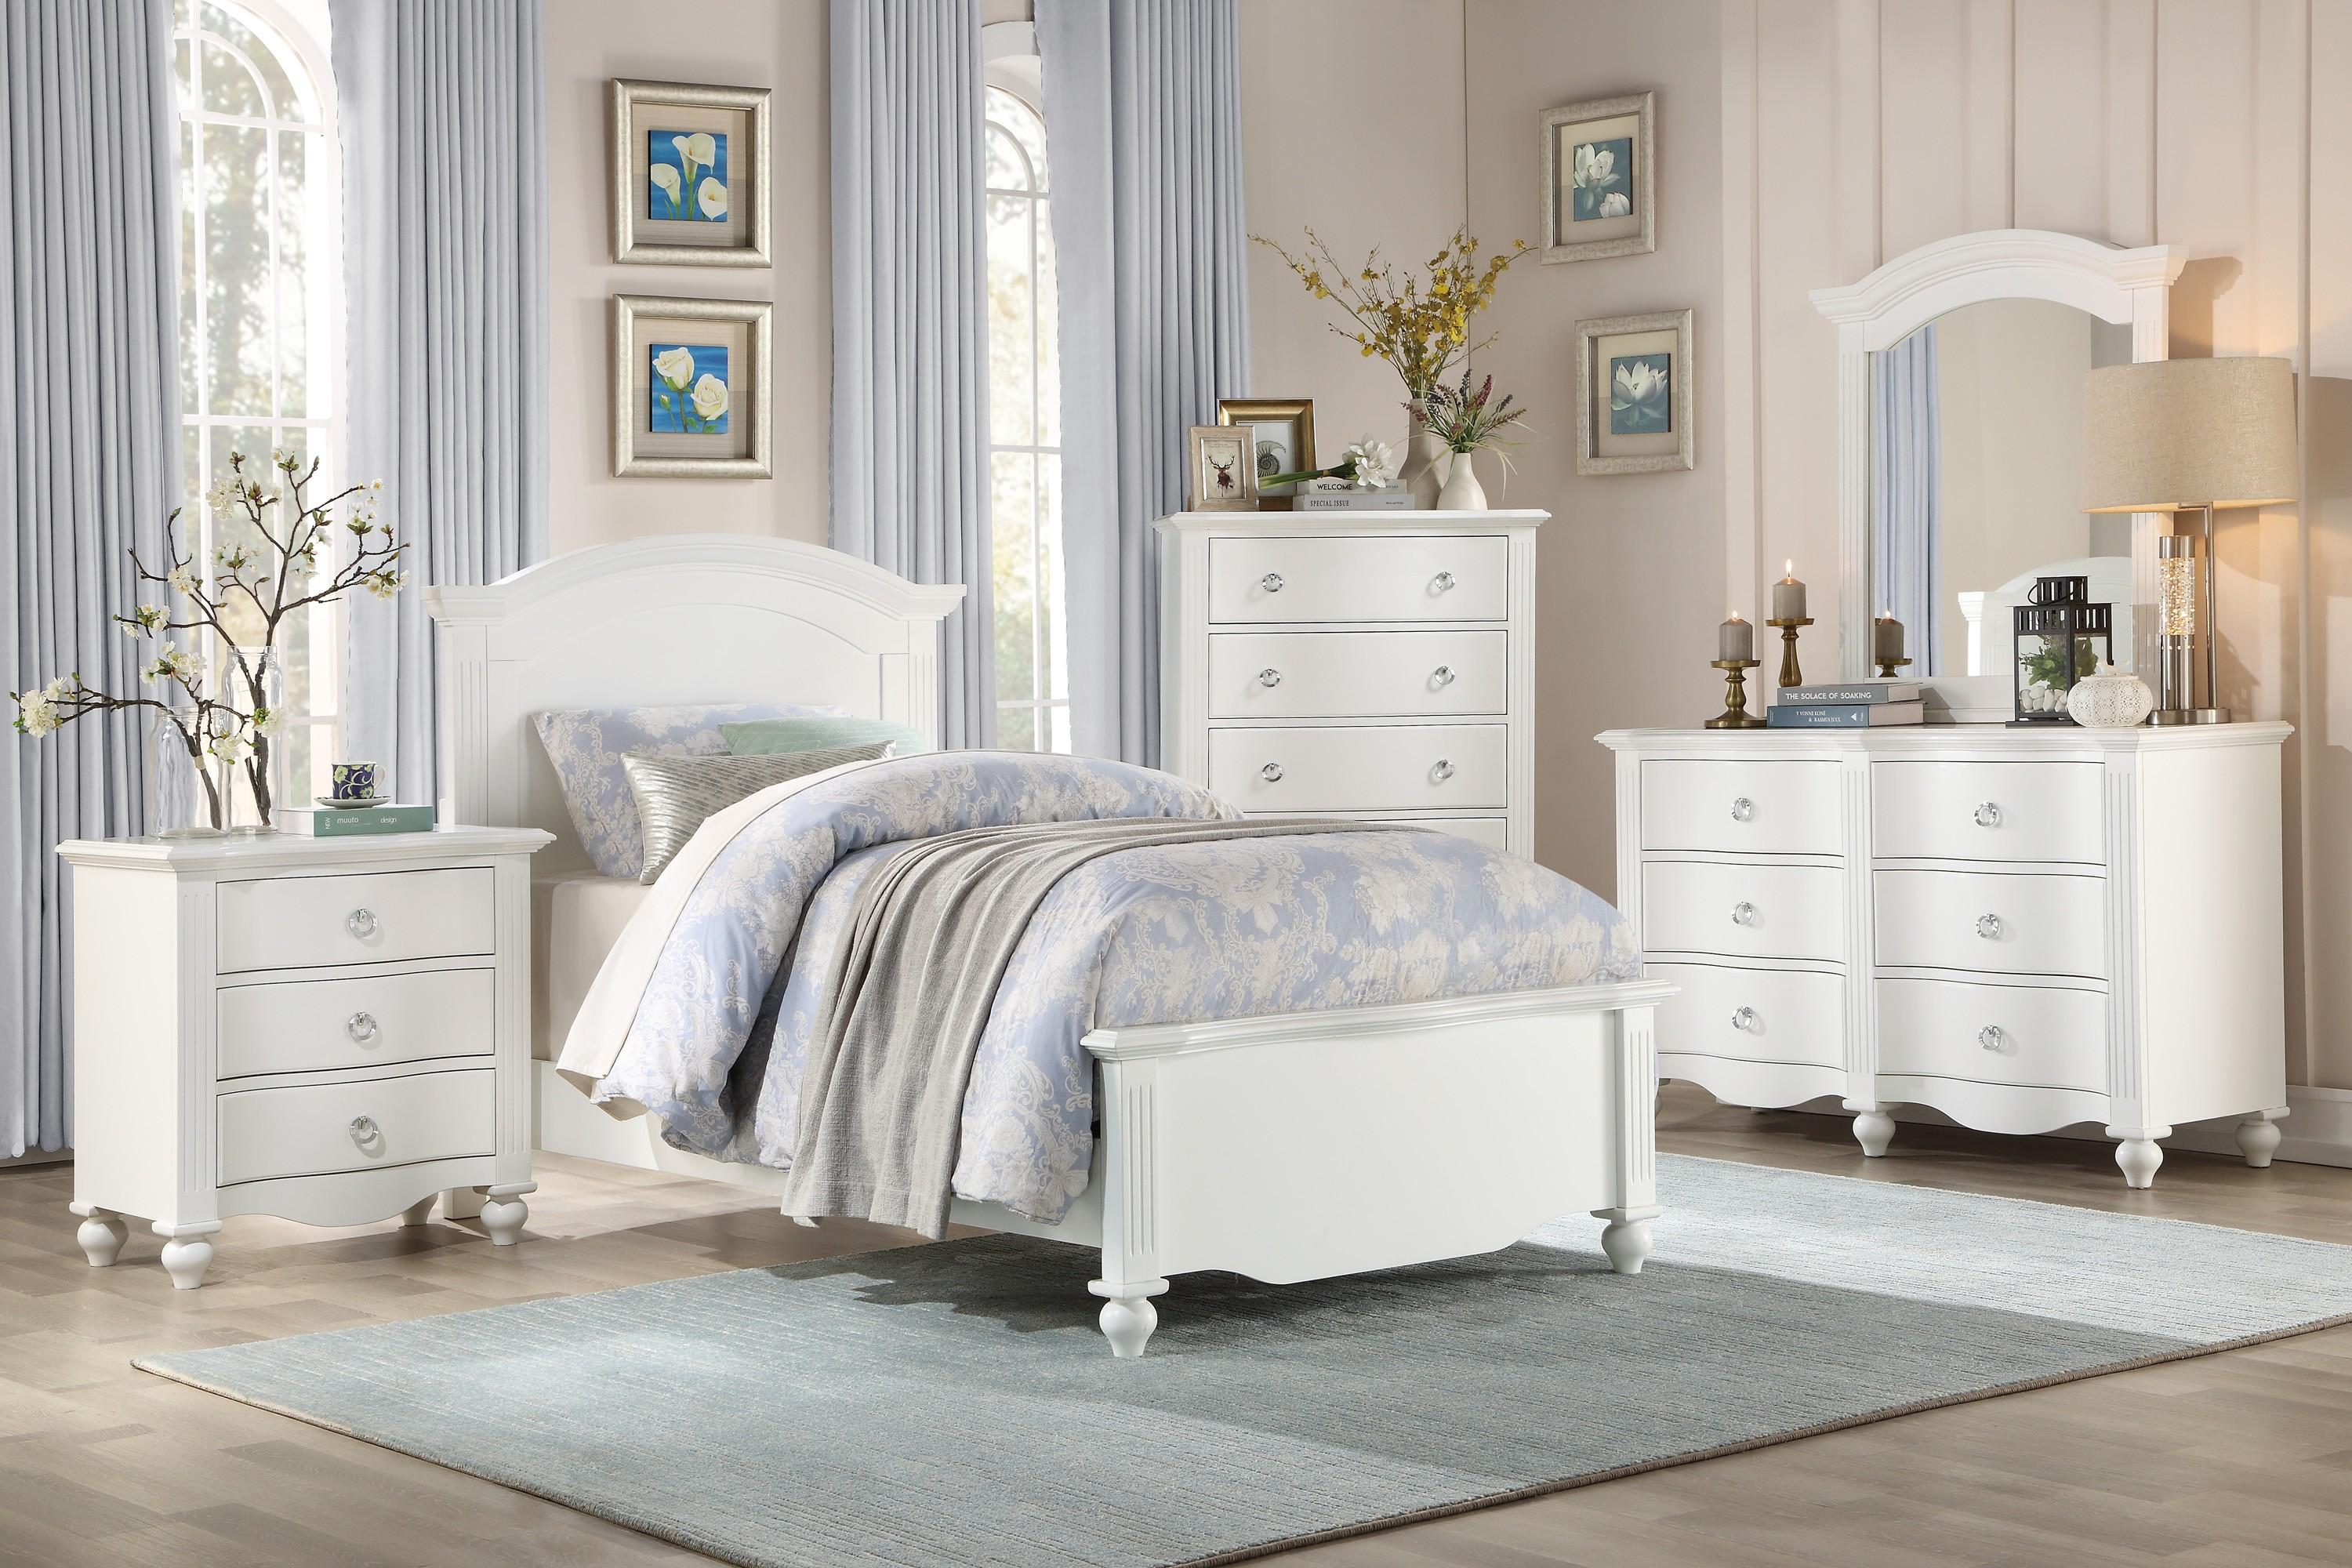 

    
Transitional White Wood Full Bedroom Set 5pcs Homelegance 2058WHF-1* Meghan
